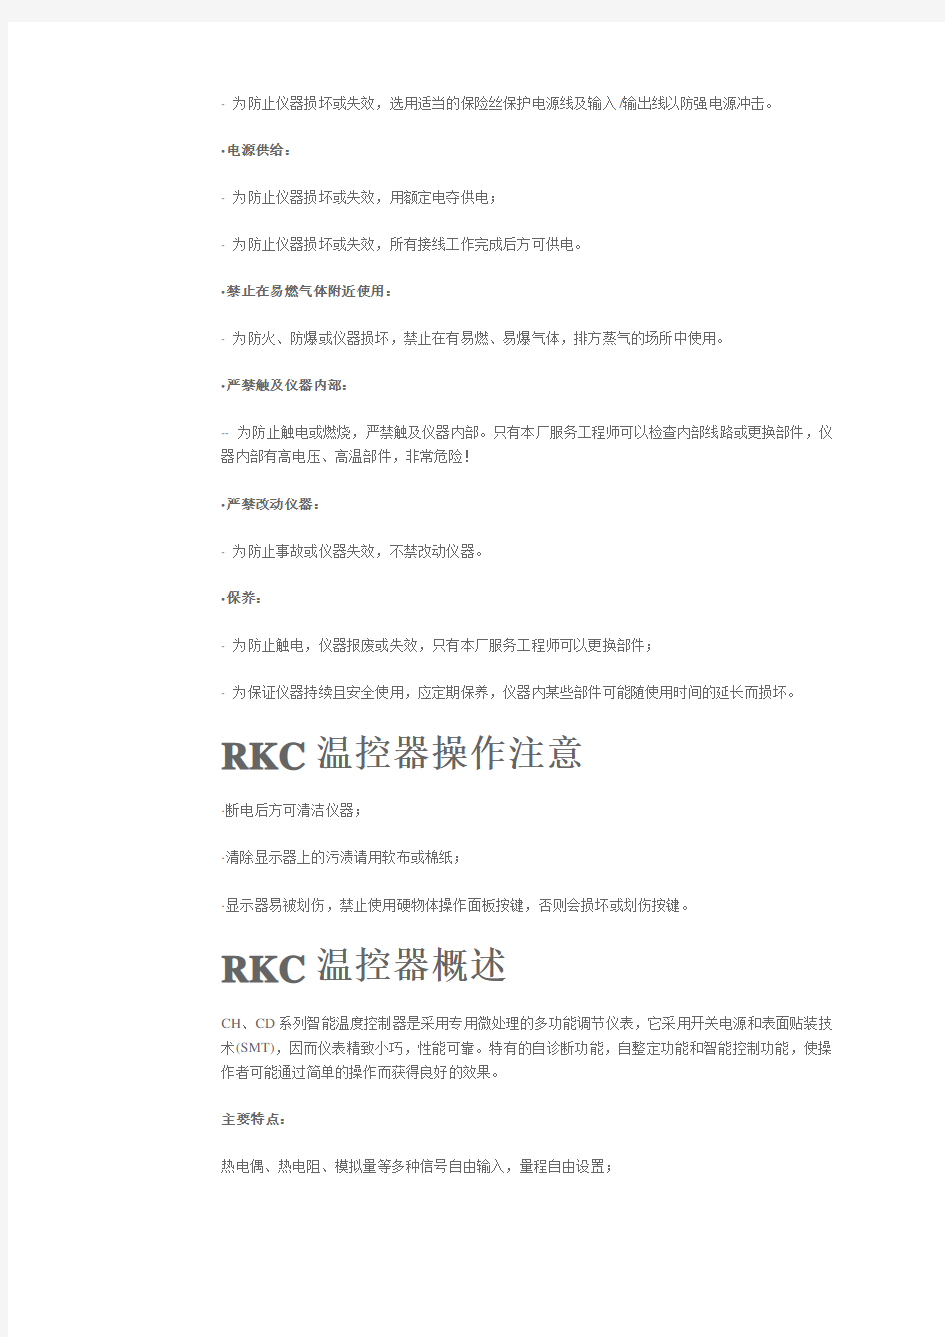 RKC温控器CD 中文说明书